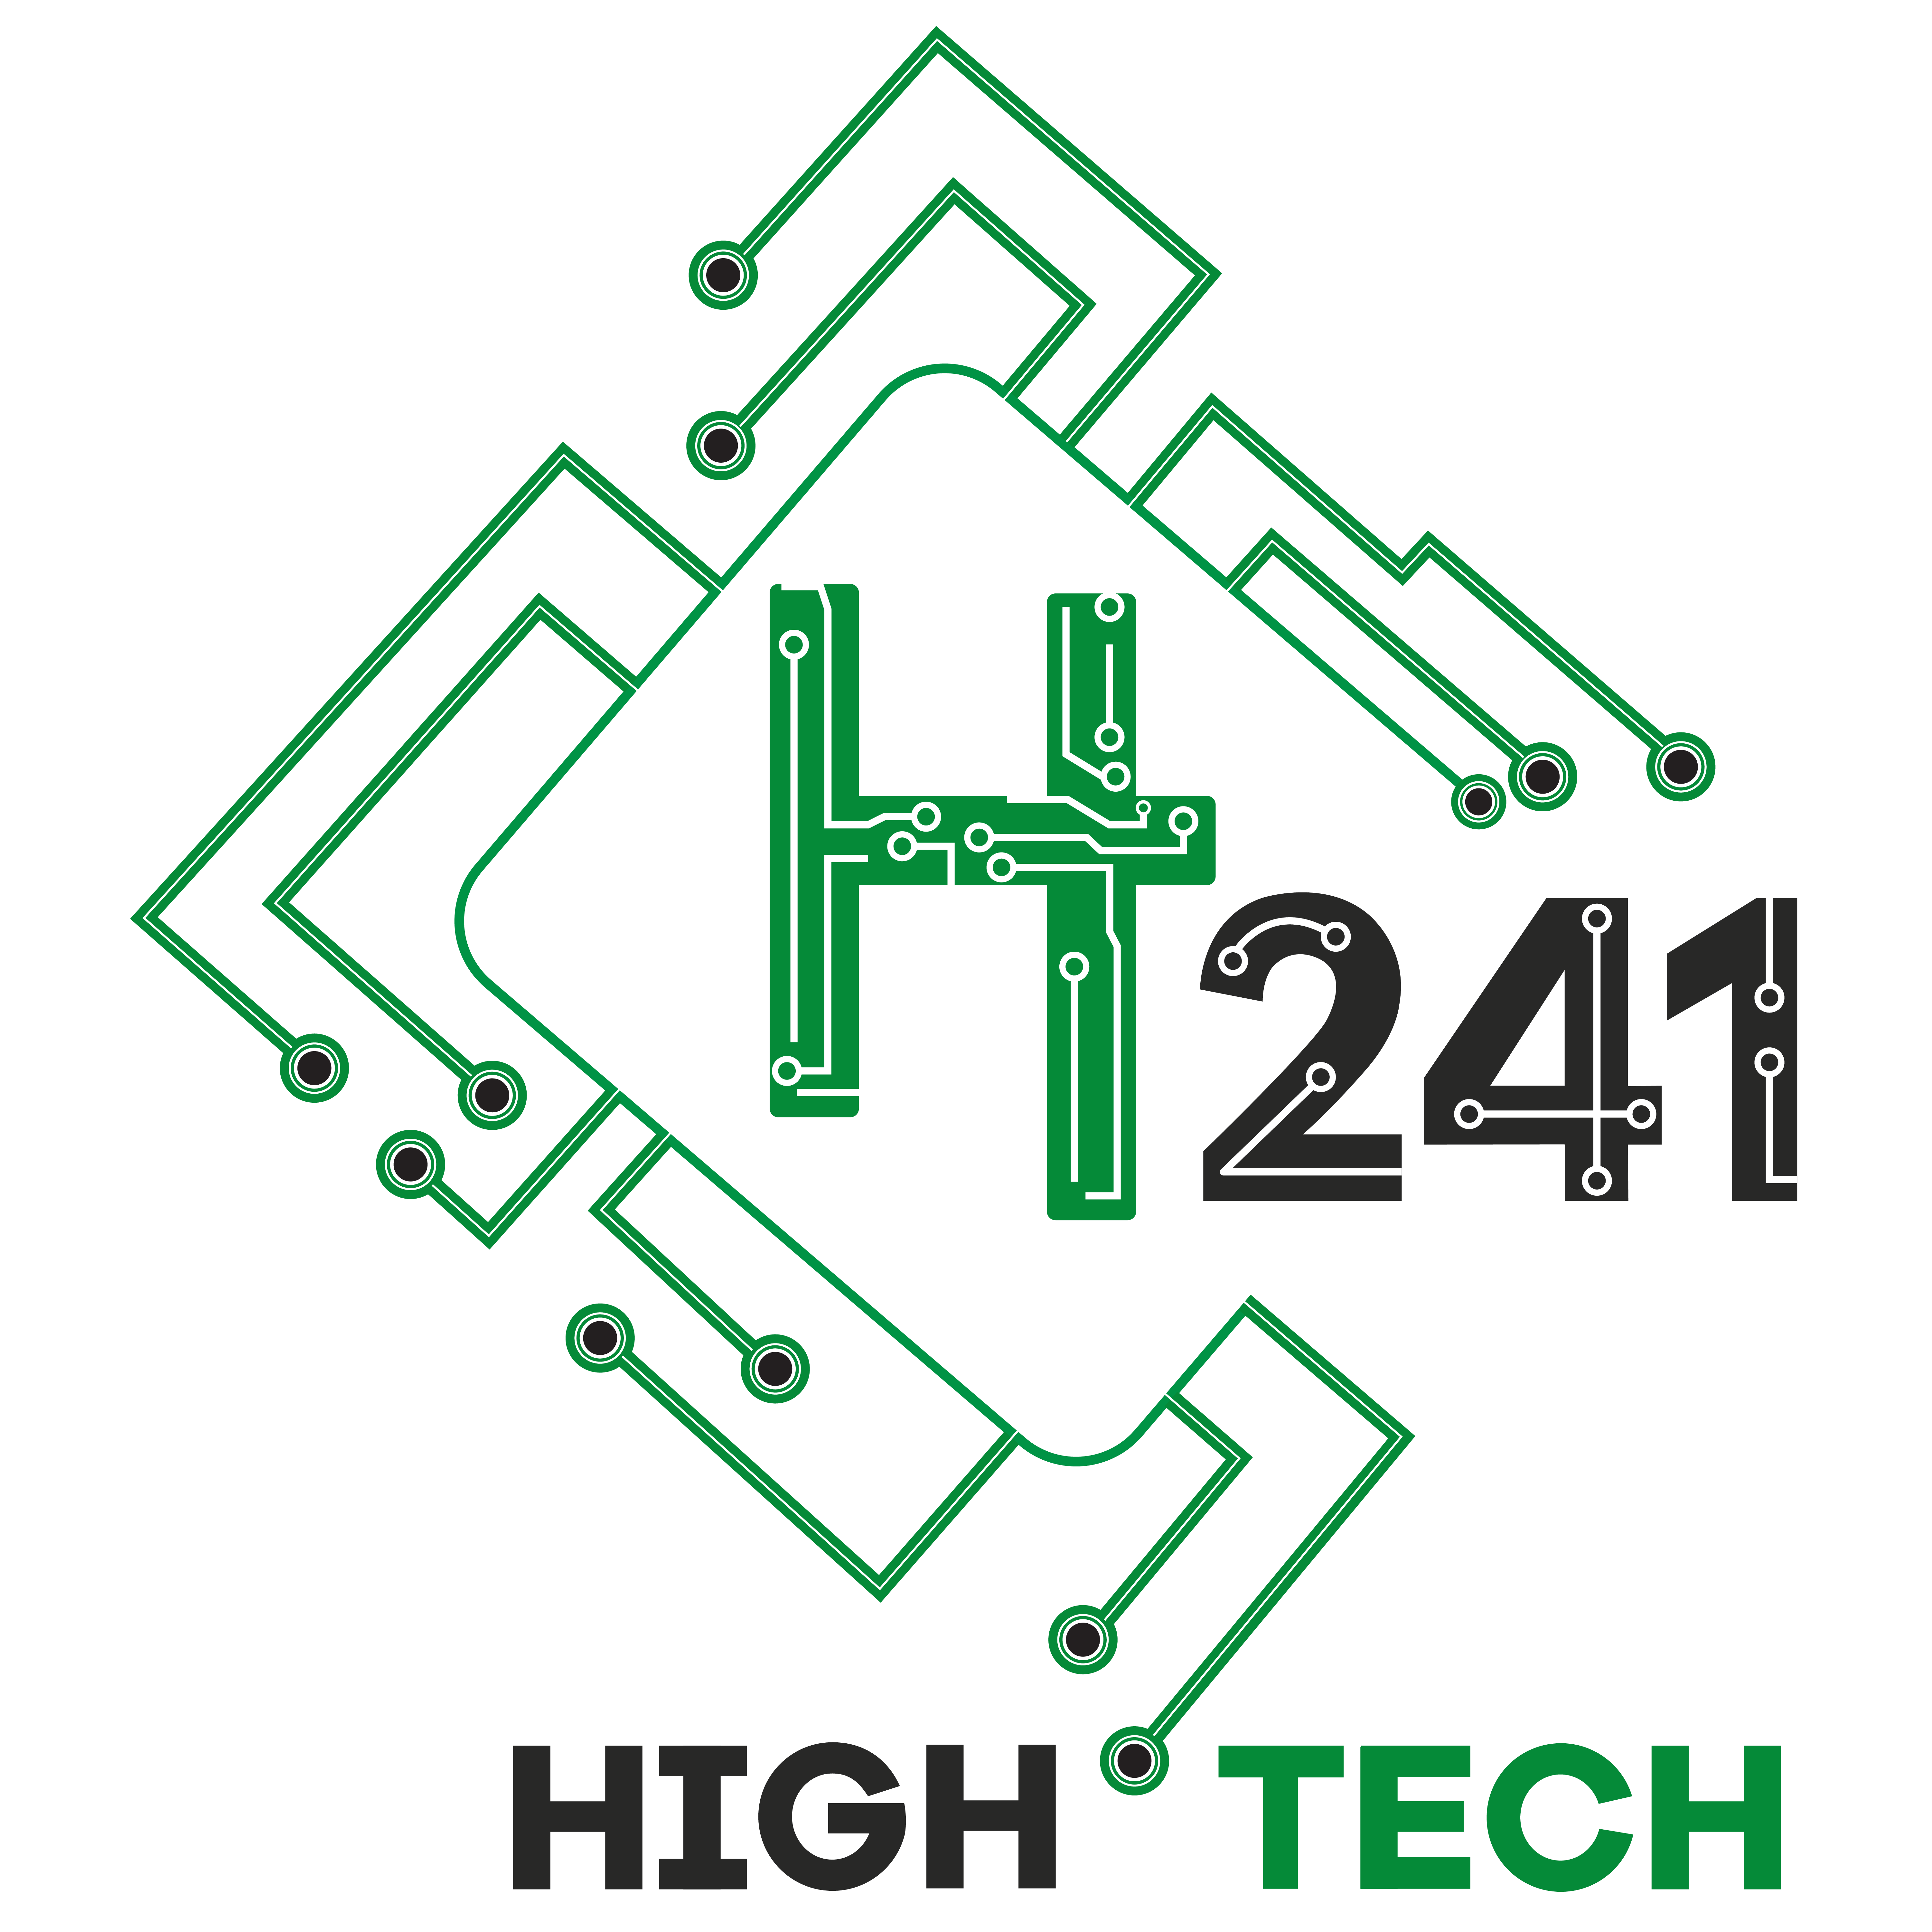 HIGH TECH 241